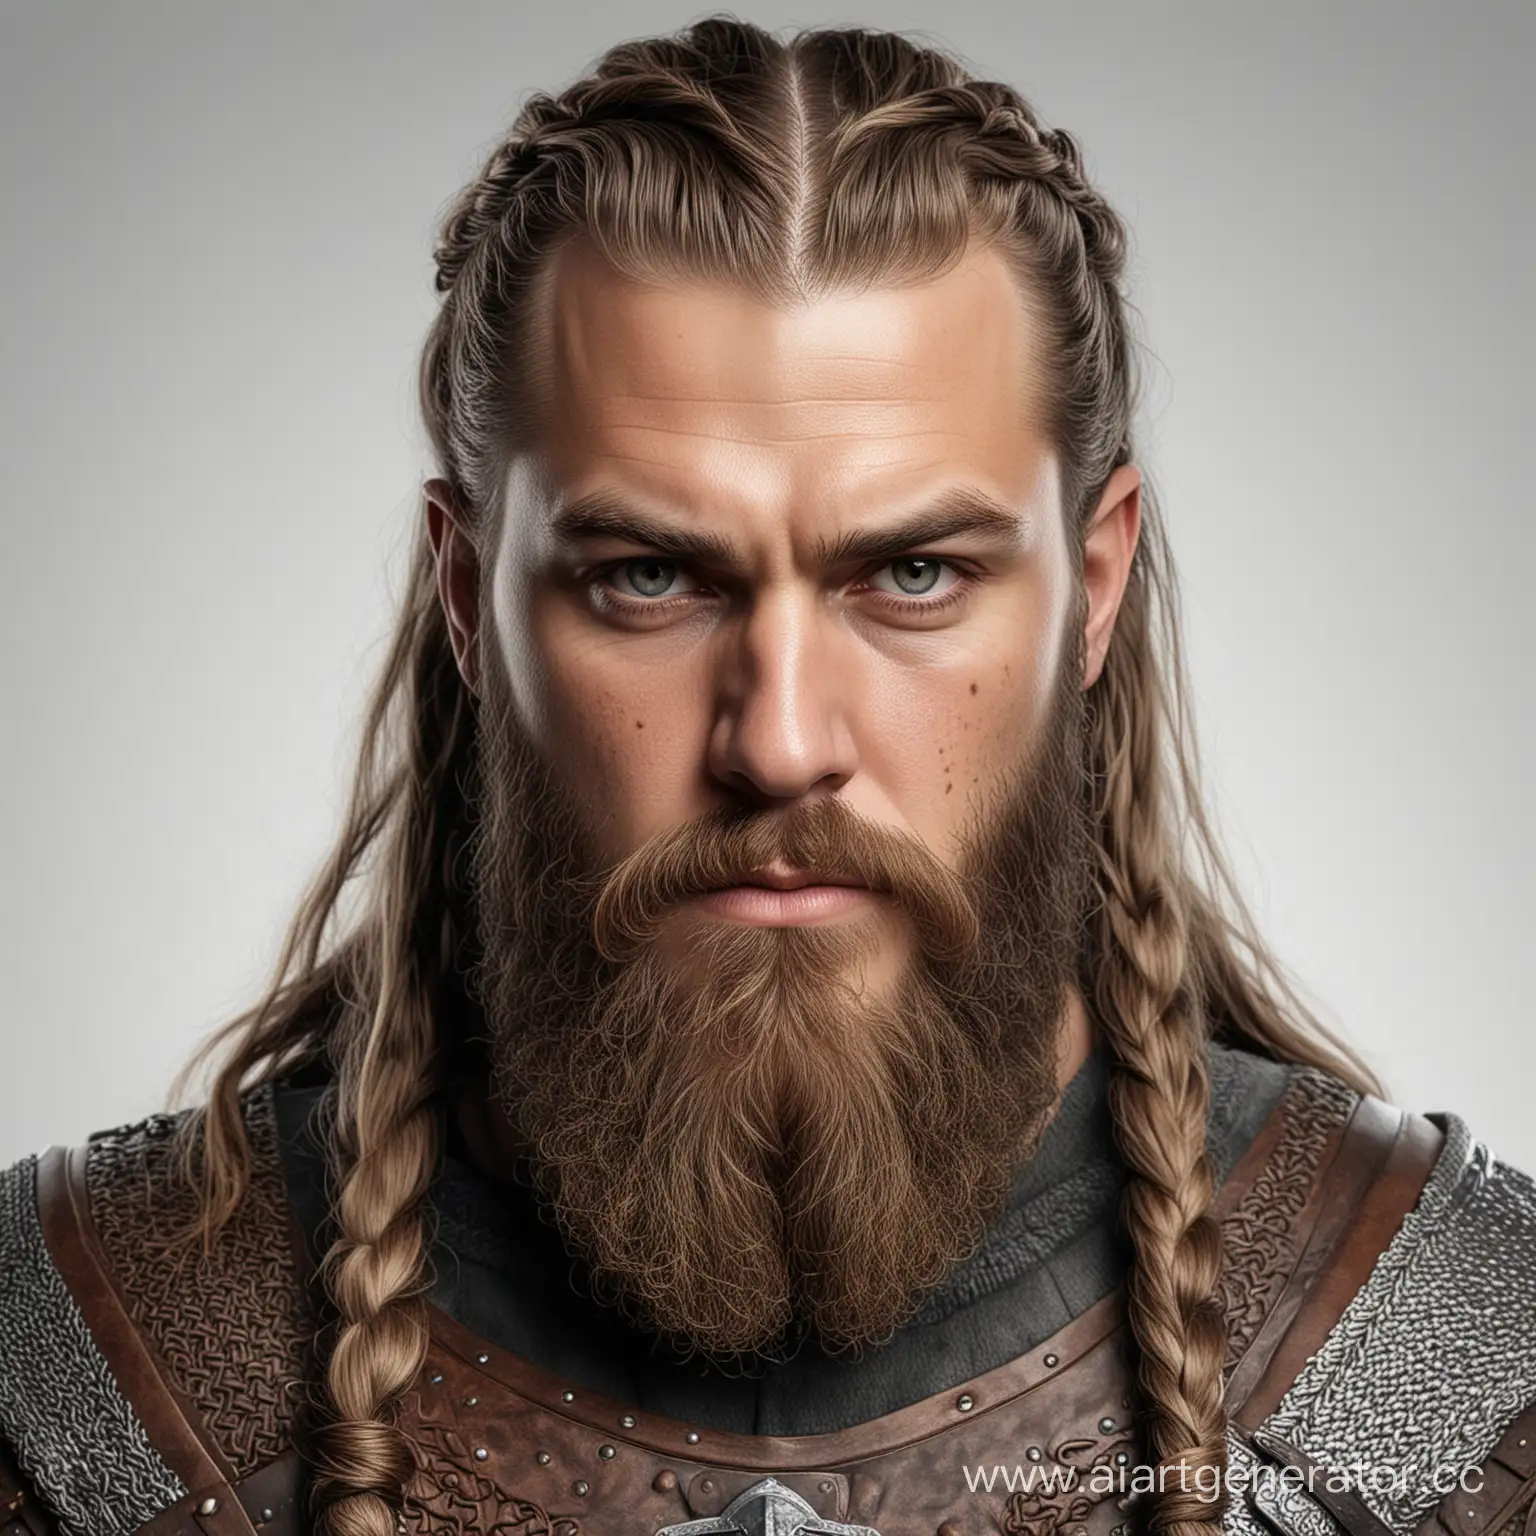 Изображение в реализме викинга , борода-косичка, длинные волосы, серьезное лицо, доспехи на белом фоне